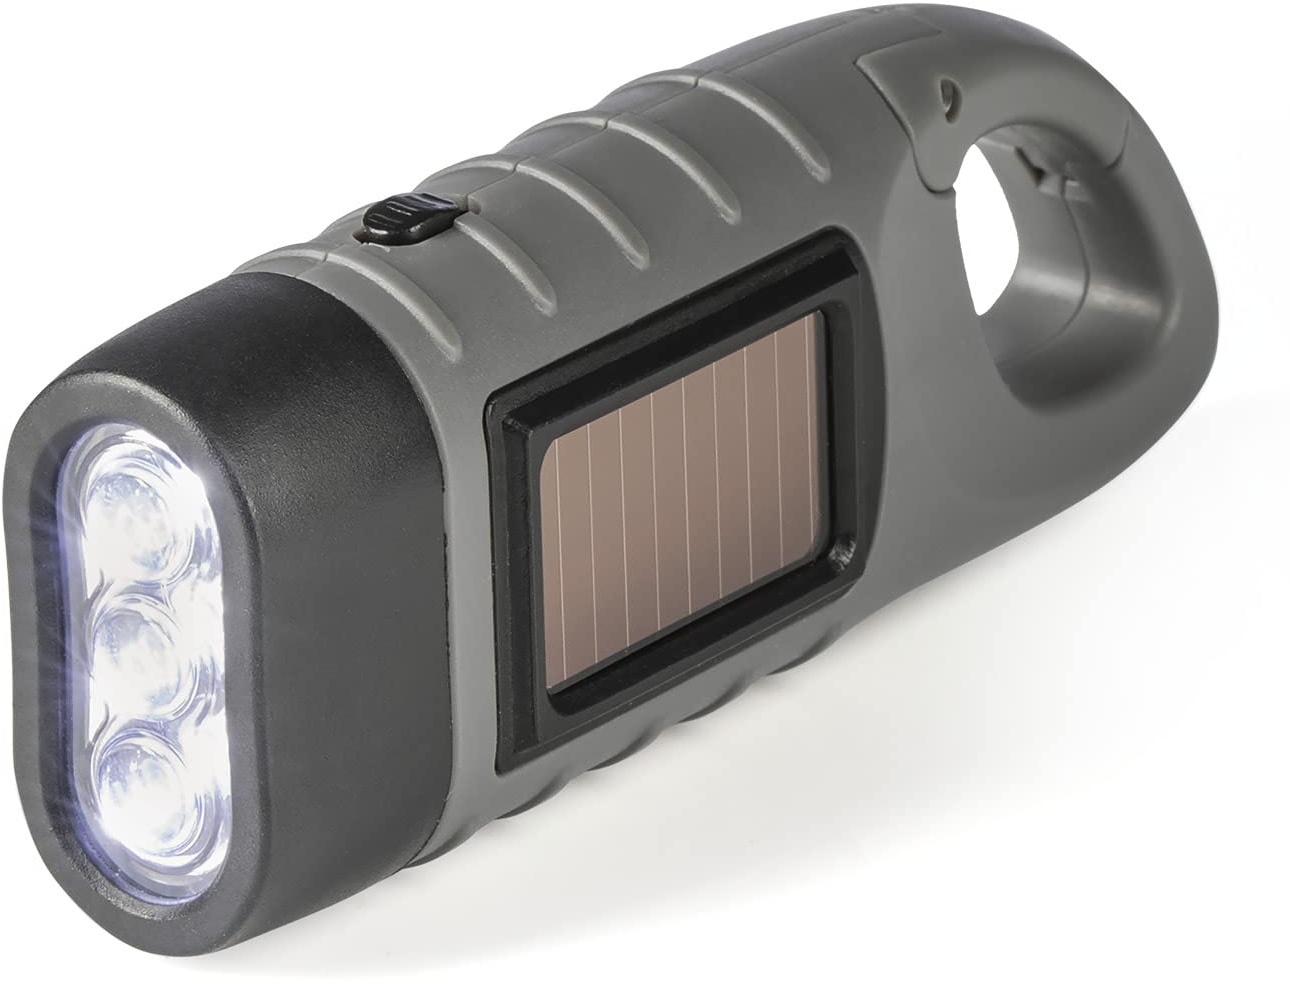 EASYmaxx Solar Taschenlampe mit Dynamo Kurbel | Notfall Solar & Dynamo Taschenlampe | helle LED Lampe | Indoor, Outdoor & Camping Notlicht mit Karabinerhaken zum Aufhängen [ohne Batterie]